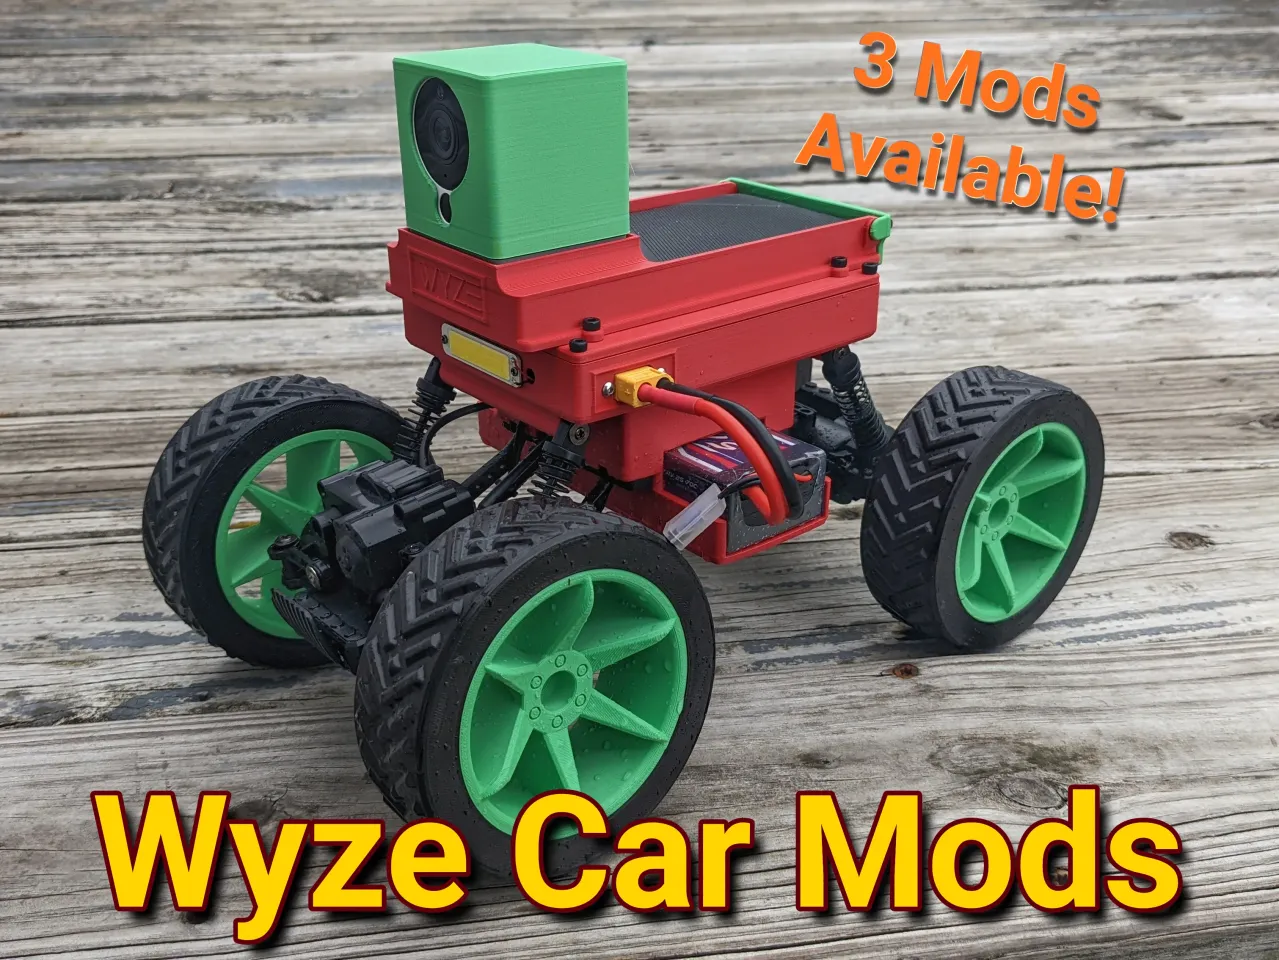 Wyze car giveaway contest - 4/1/21 - Wyze News - Wyze Forum